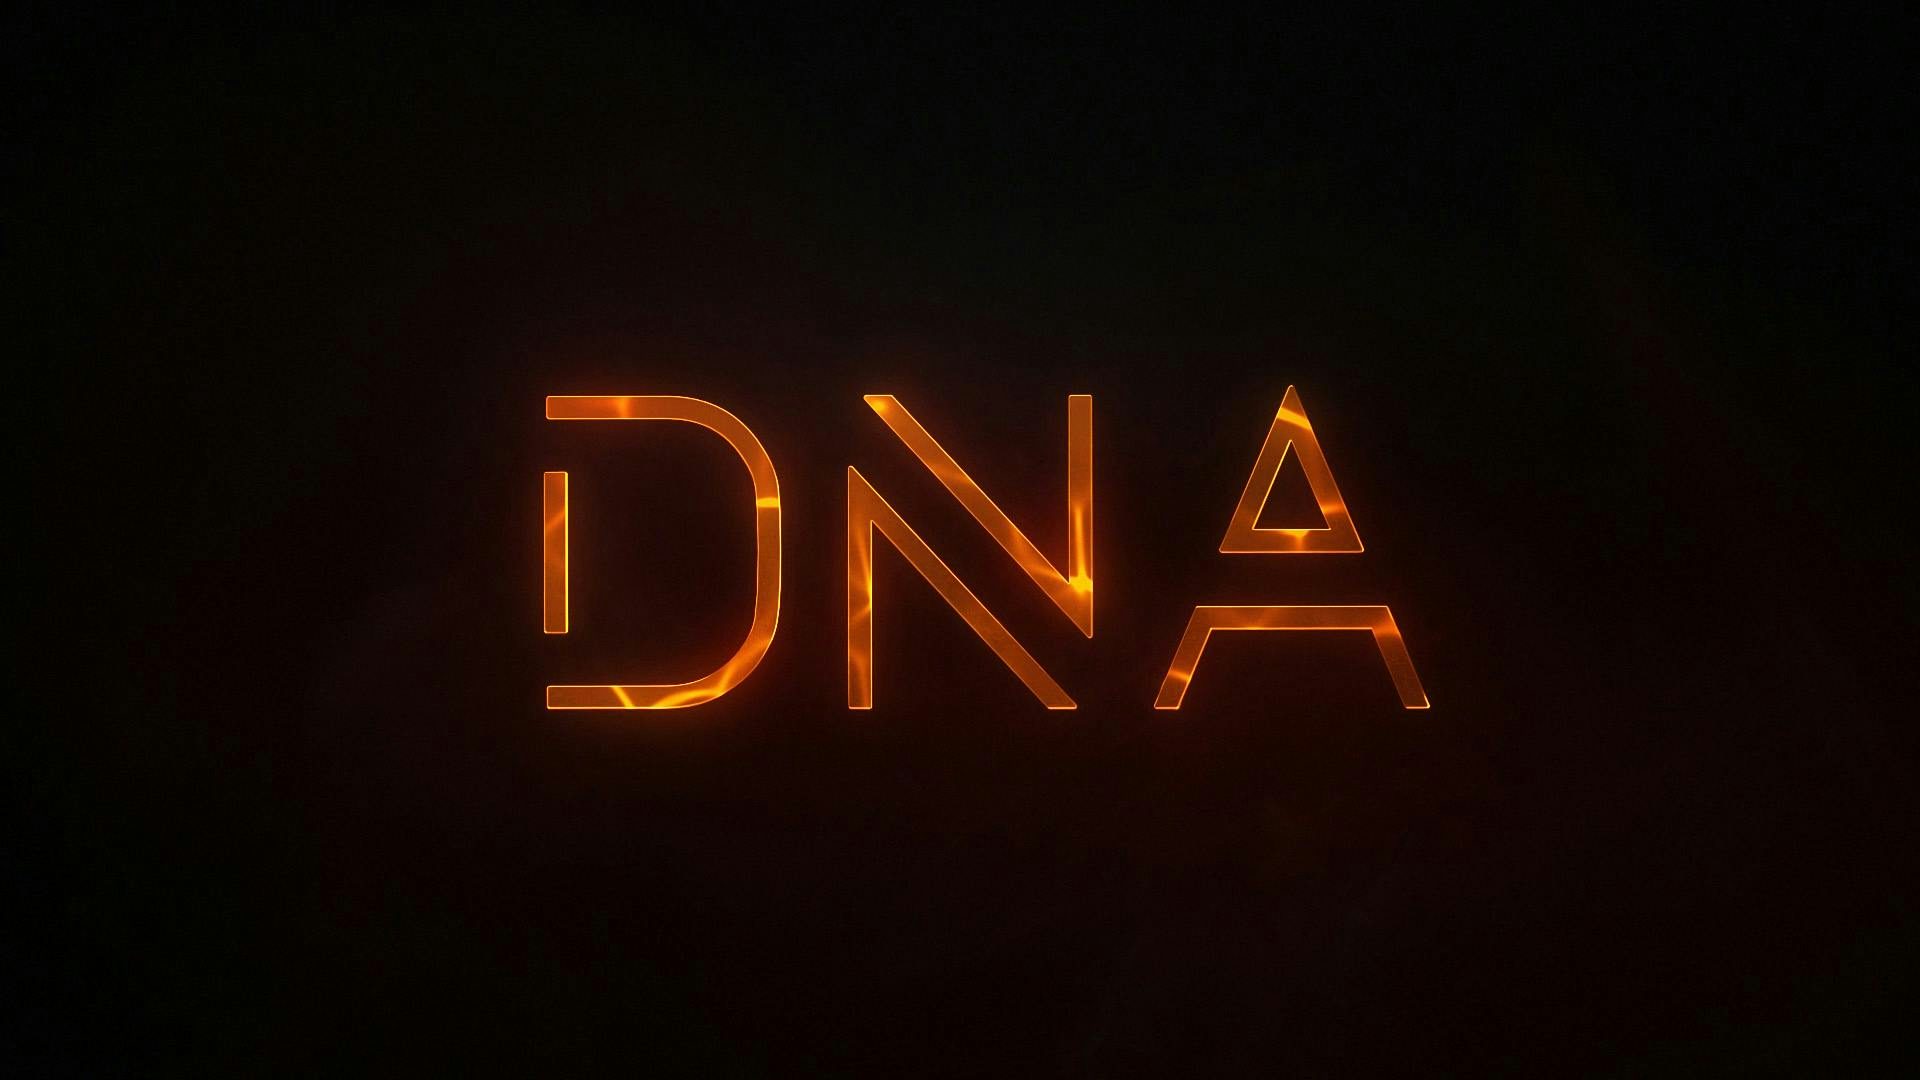  Stiga DNA-logotyp visas